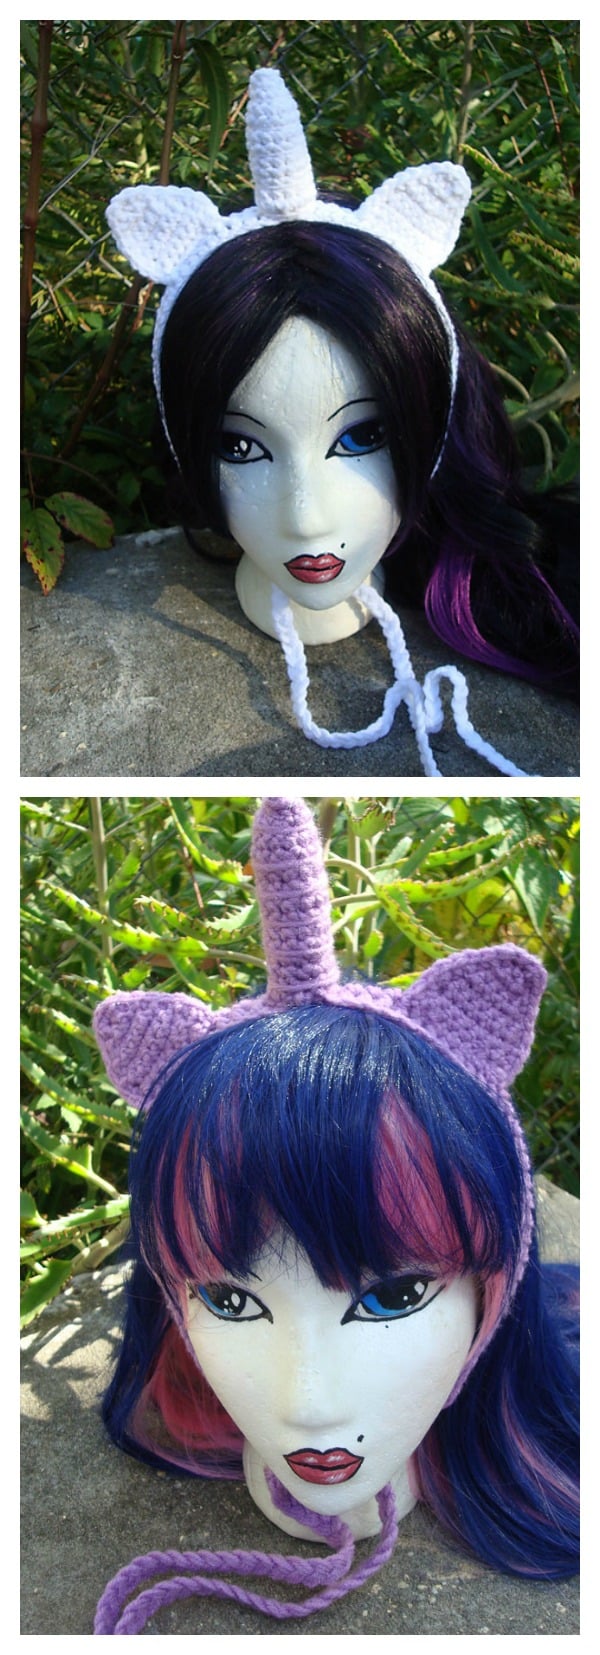 Crochet Magical Unicorn Headband Free Pattern